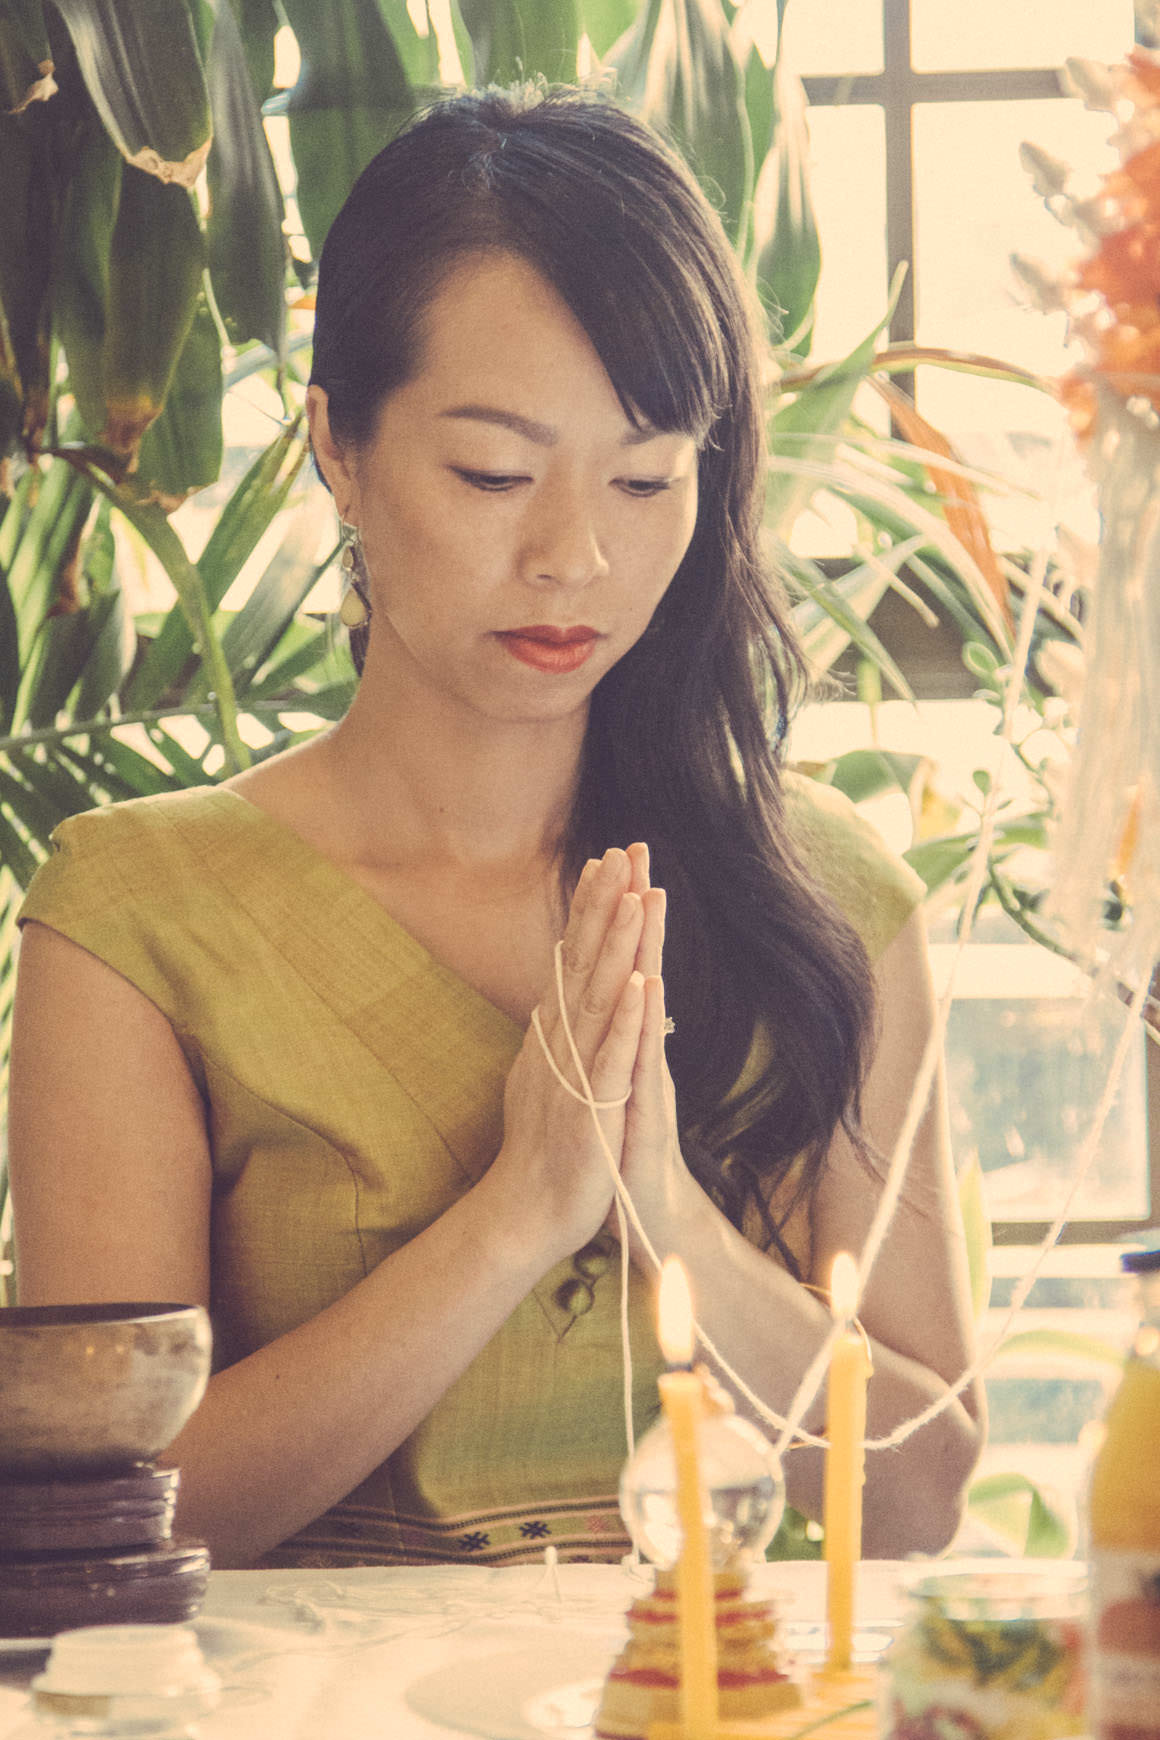 lao girl praying